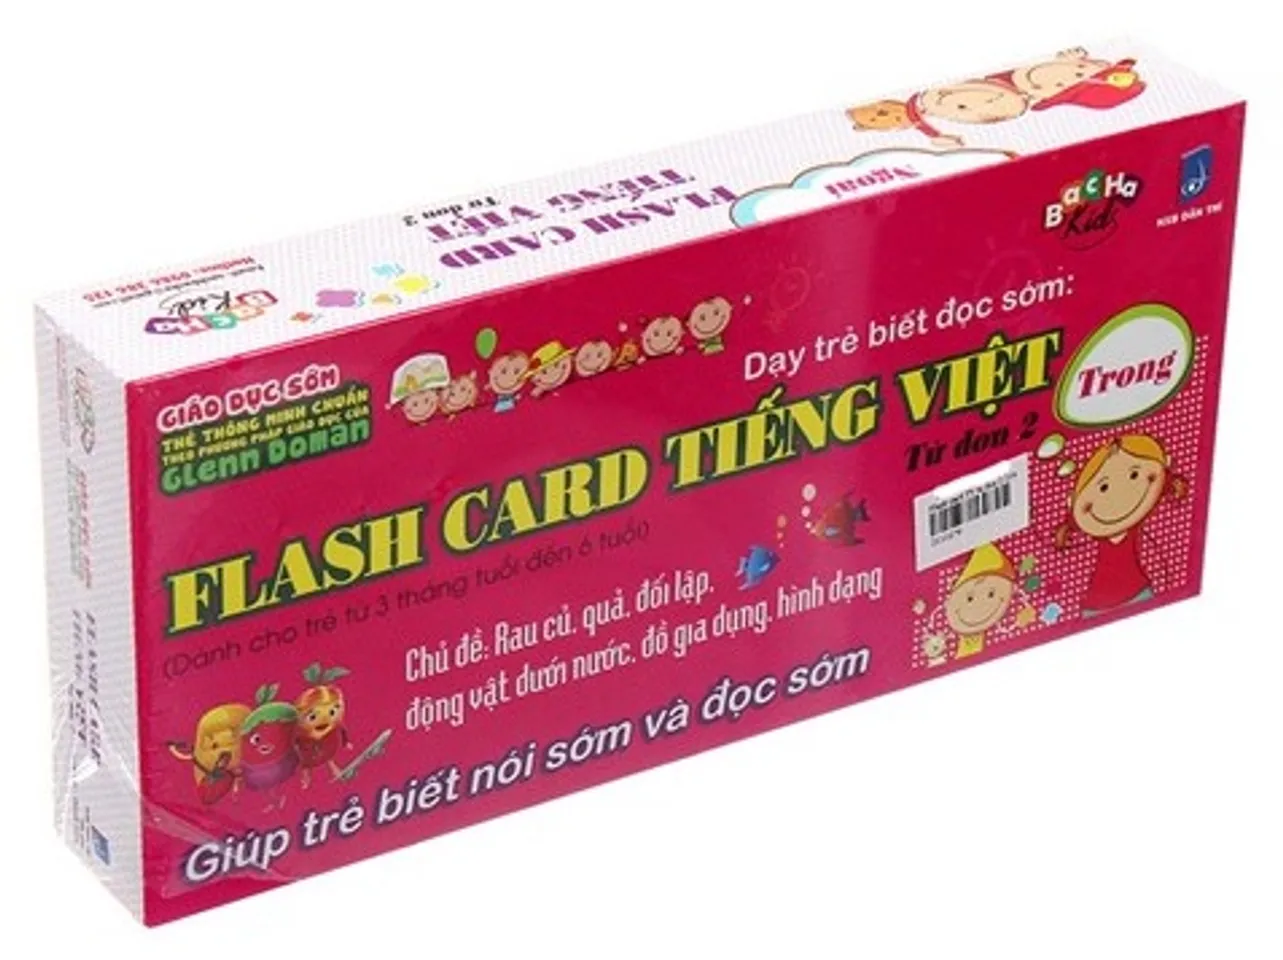 Thẻ học thông minh Flash card tiếng việt - Từ đơn 2 được thiết kế chữ màu đỏ dễ đọc, bền màu